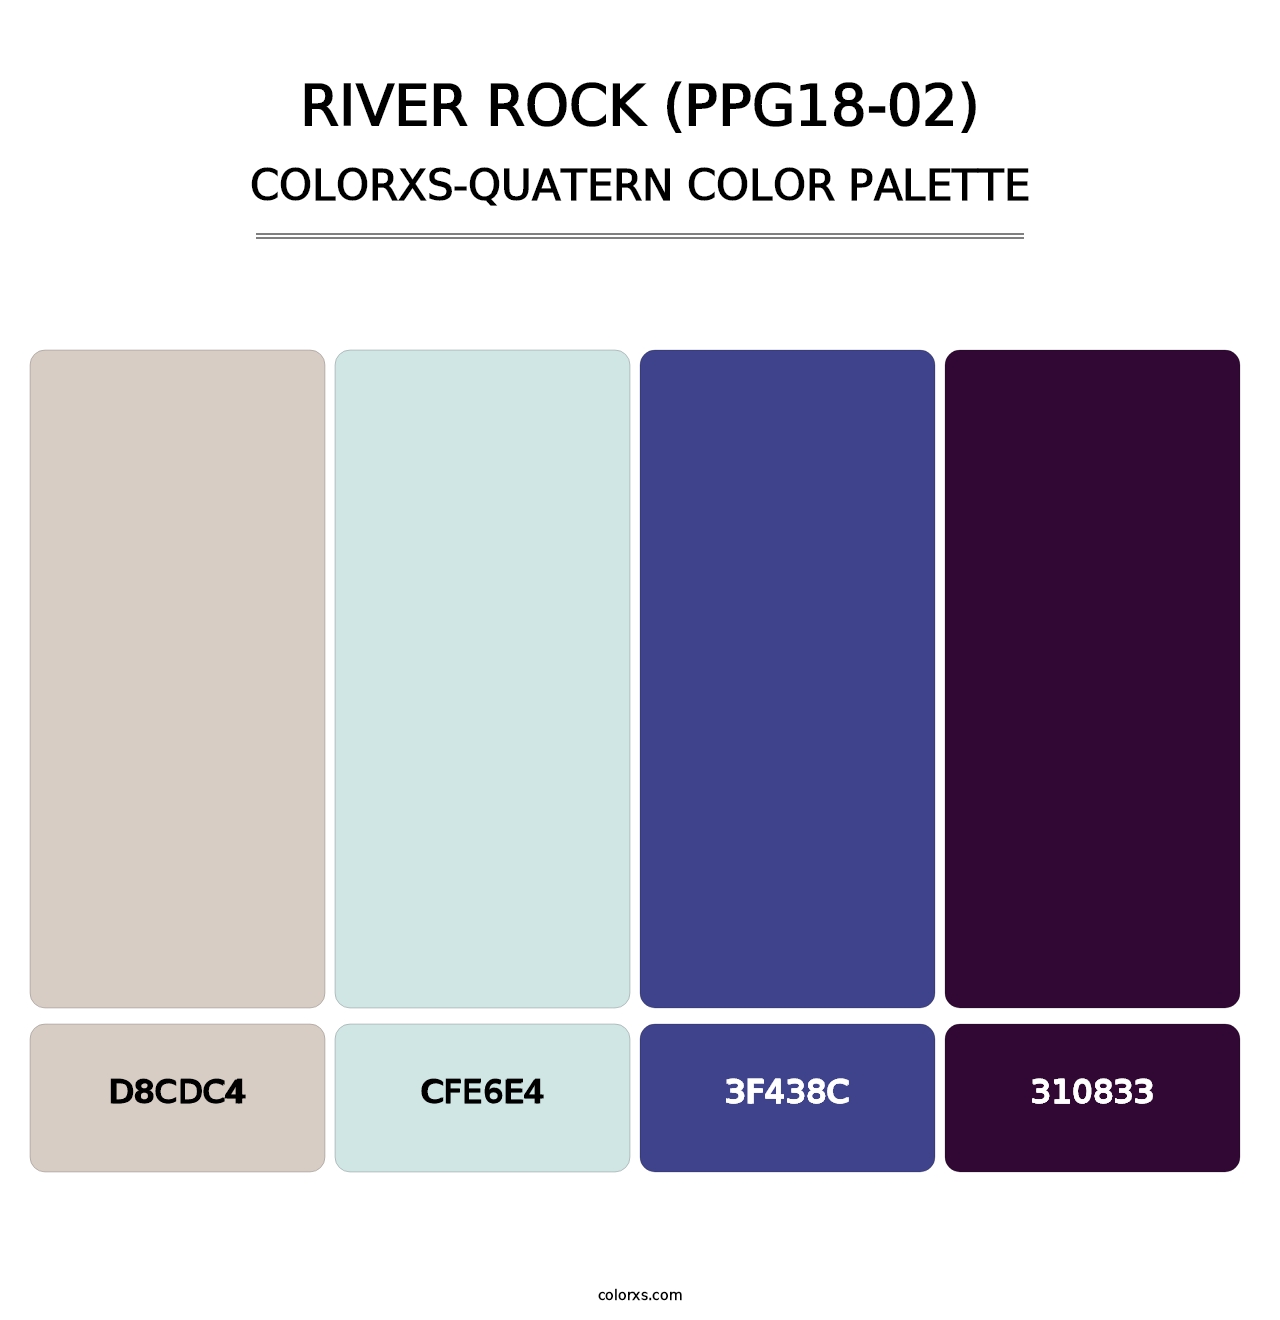 River Rock (PPG18-02) - Colorxs Quatern Palette